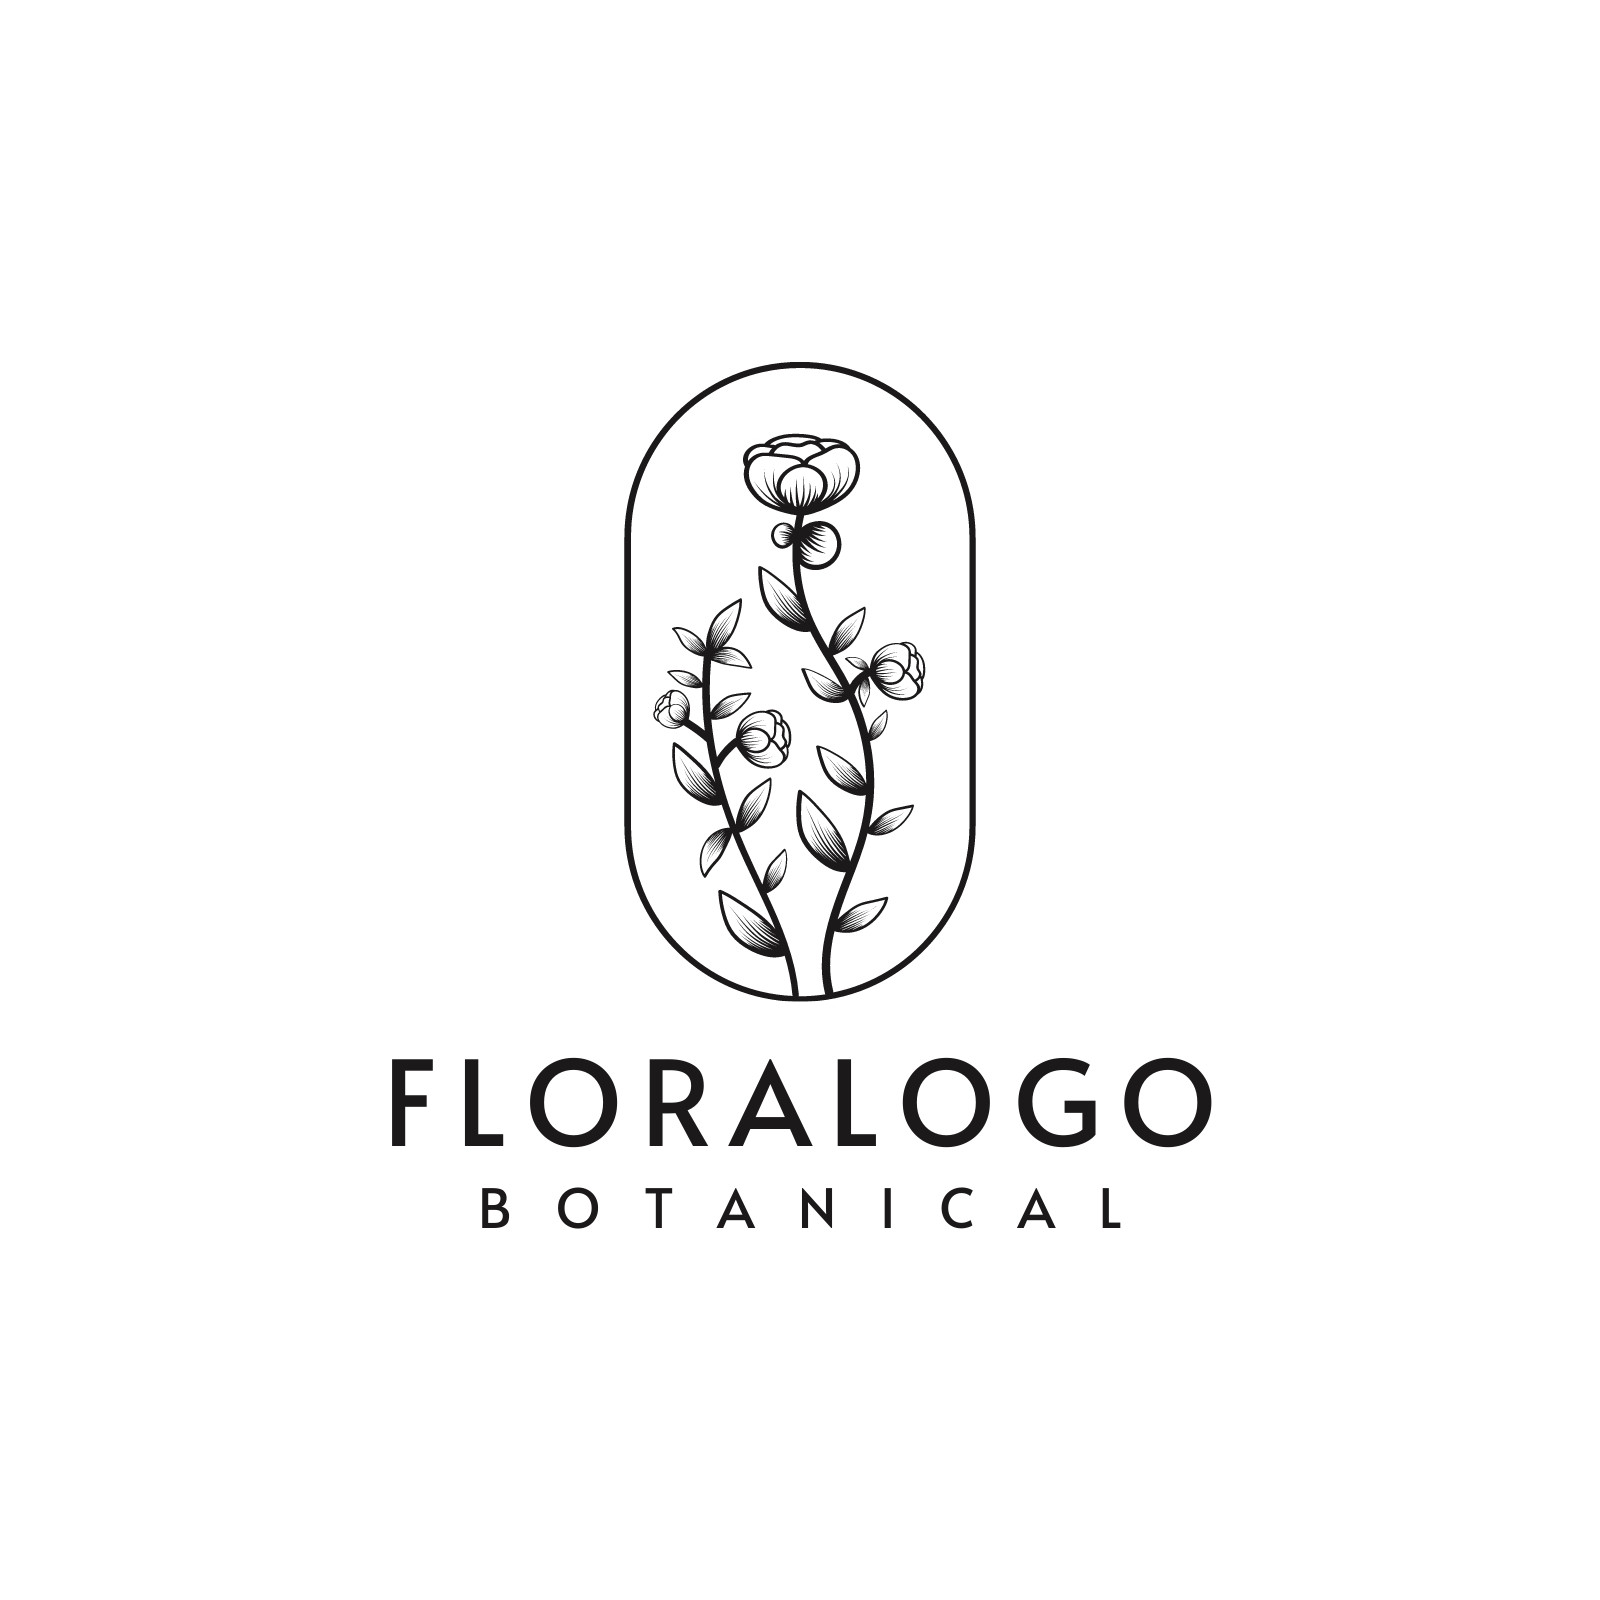 Premium Vector | Botanical flowers logo | Flower logo, Flower logo design,  Floral logo design